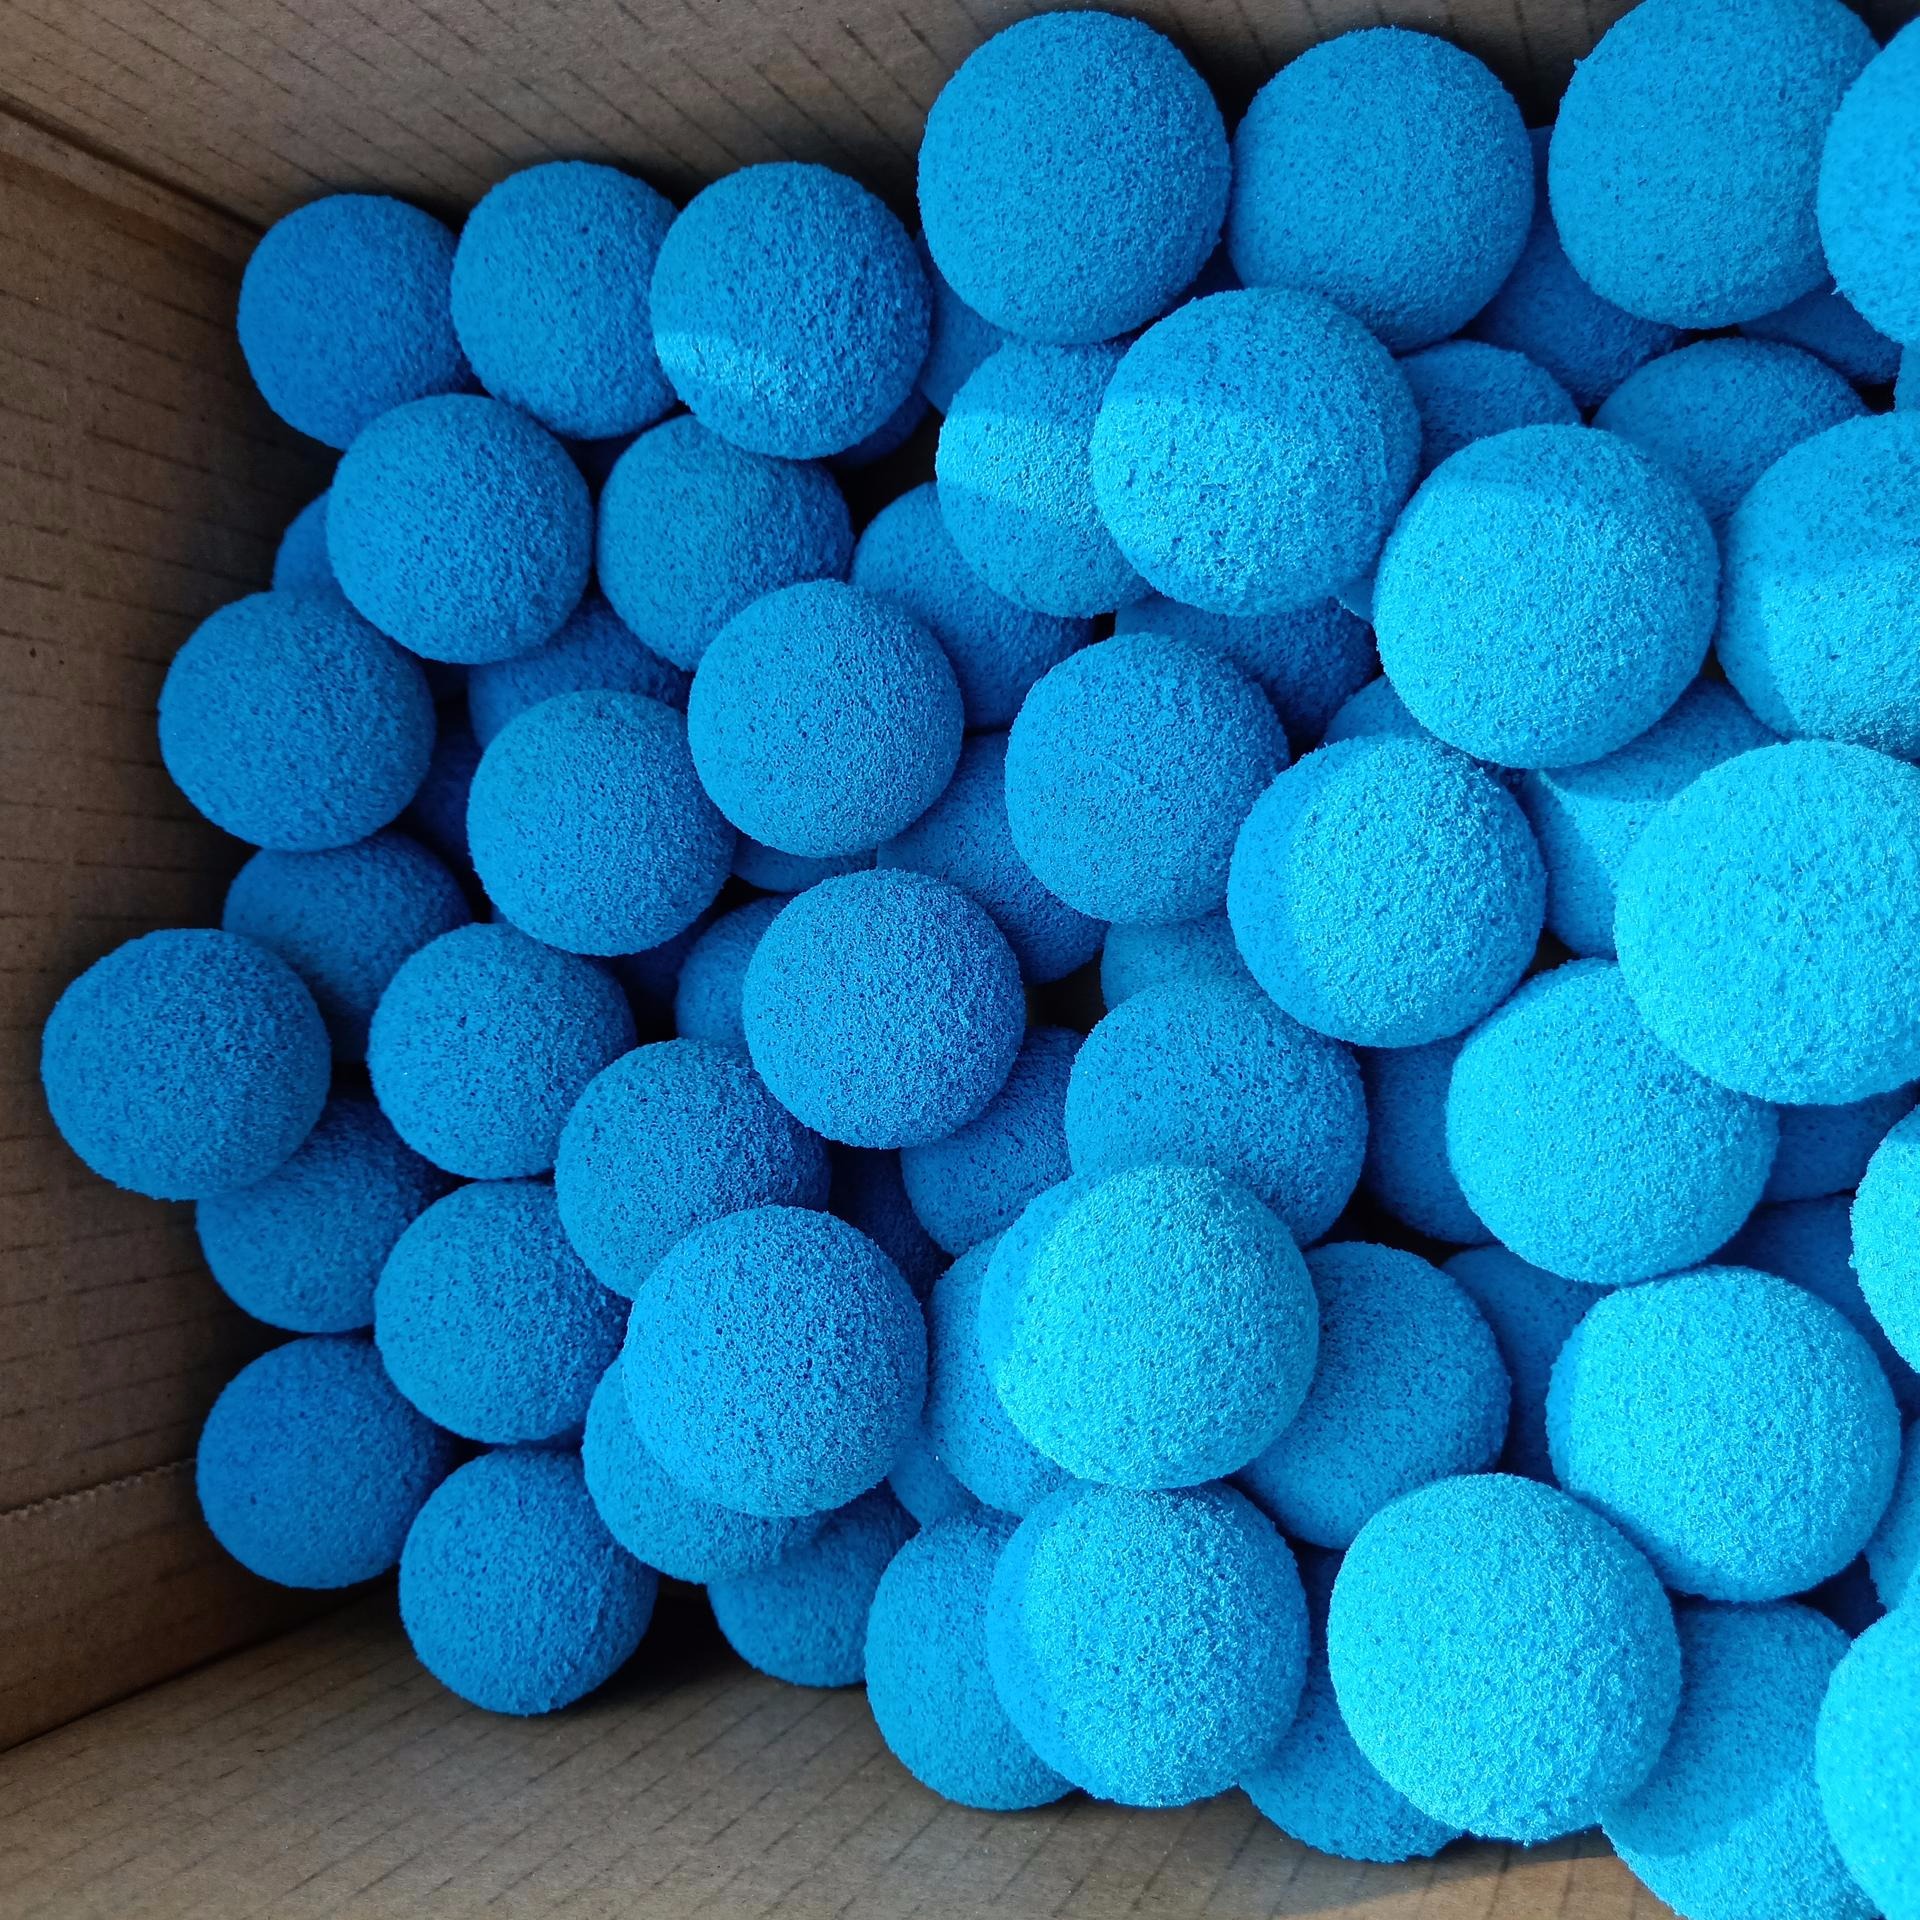 长期供应23mm海绵胶球 橡胶海绵胶球 厂家直销 批发价格